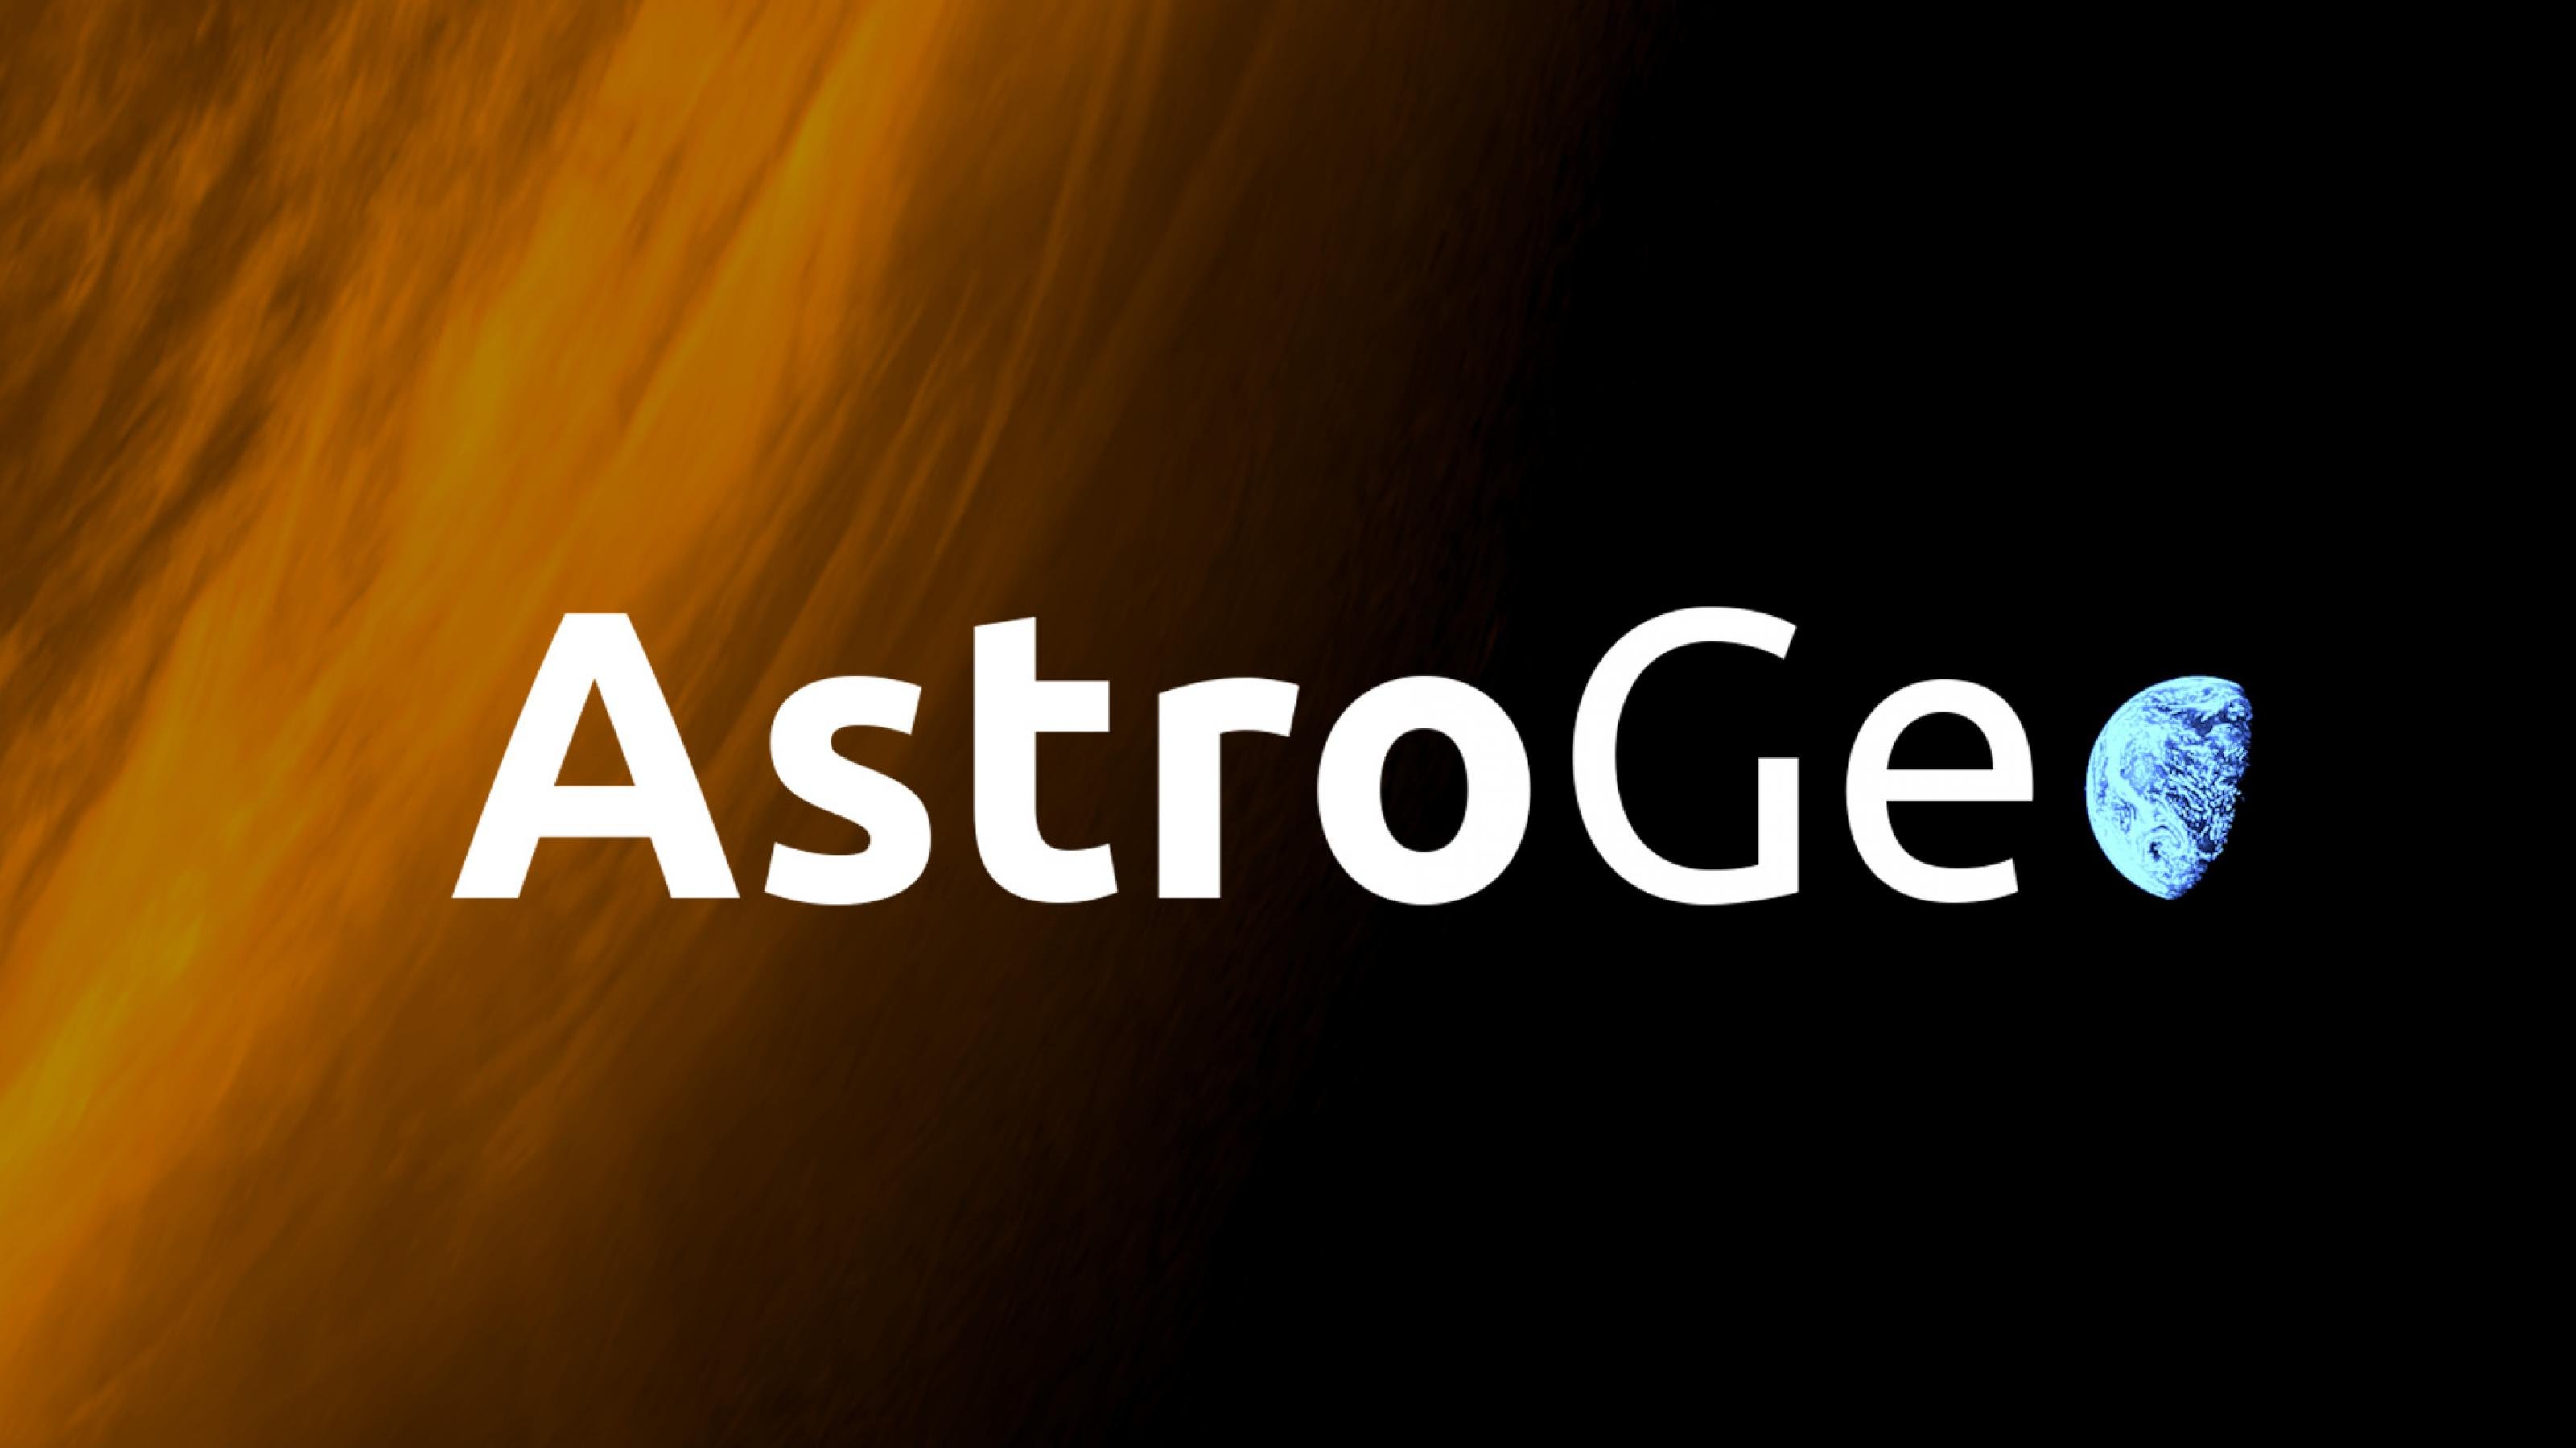 Logo des AstroGeo Podcast: angerissene Sonne, das „o“ von AstroGeo die Erde im Halbschatten.